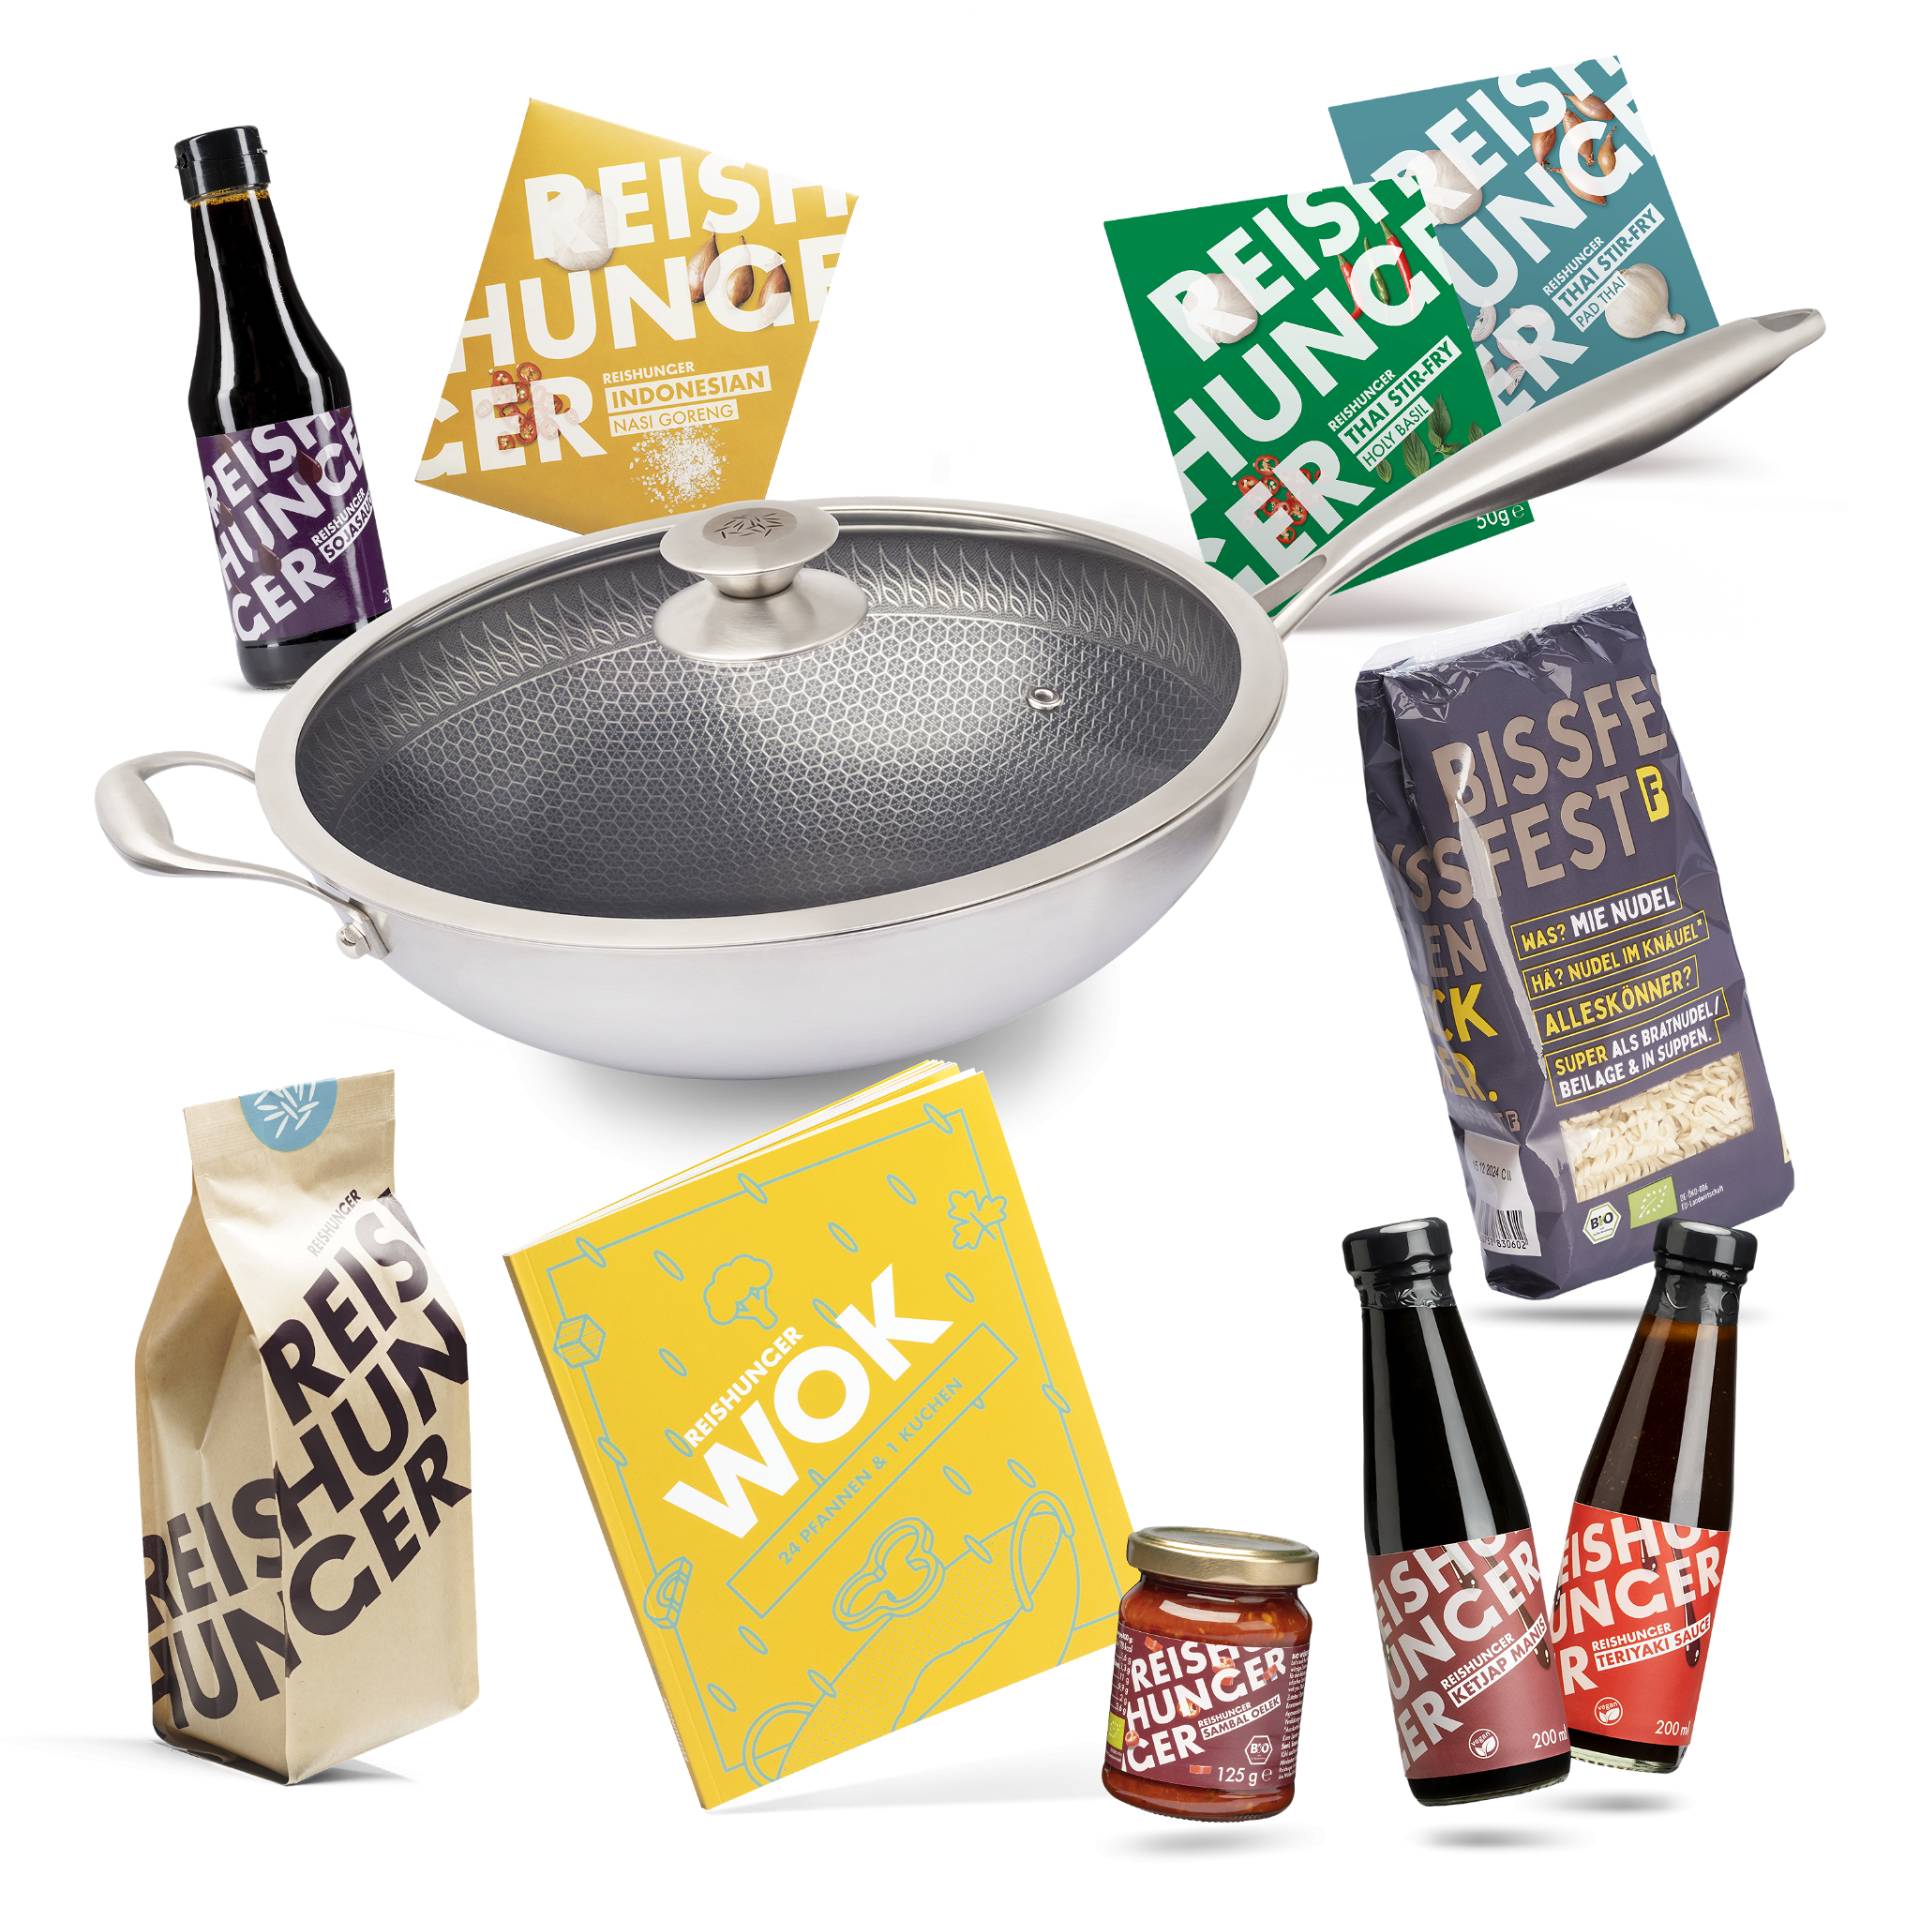 Reishunger Wok Starter Set (11-teilig) | Premium Edelstahl Wok | Wok Kochbuch mit 25 Rezepten | Alle Zutaten für leckere Wok Gerichte